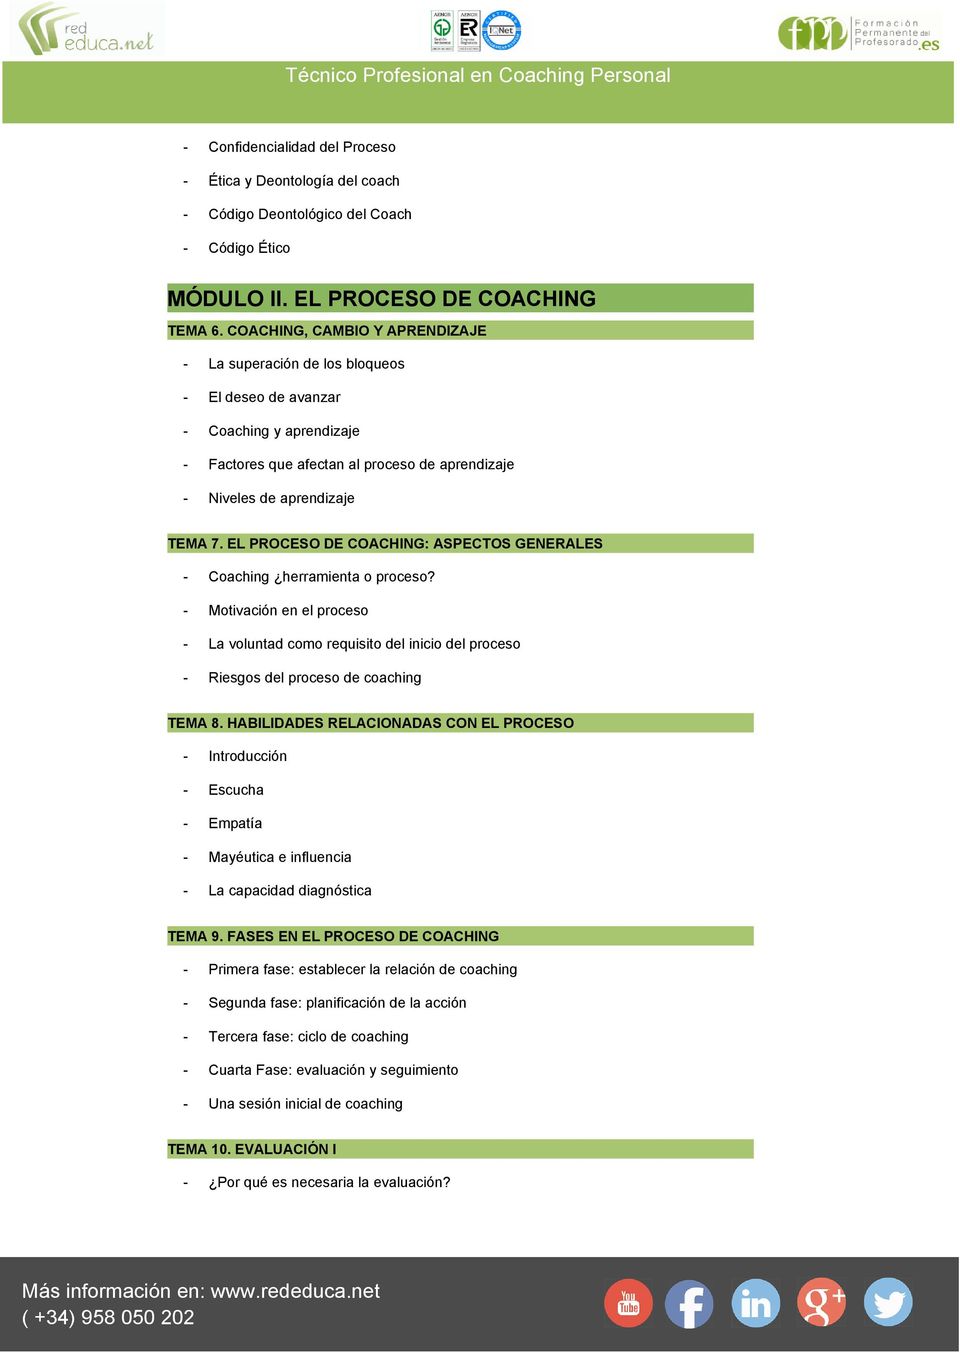 EL PROCESO DE COACHING: ASPECTOS GENERALES - Coaching herramienta o proceso? - Motivación en el proceso - La voluntad como requisito del inicio del proceso - Riesgos del proceso de coaching TEMA 8.